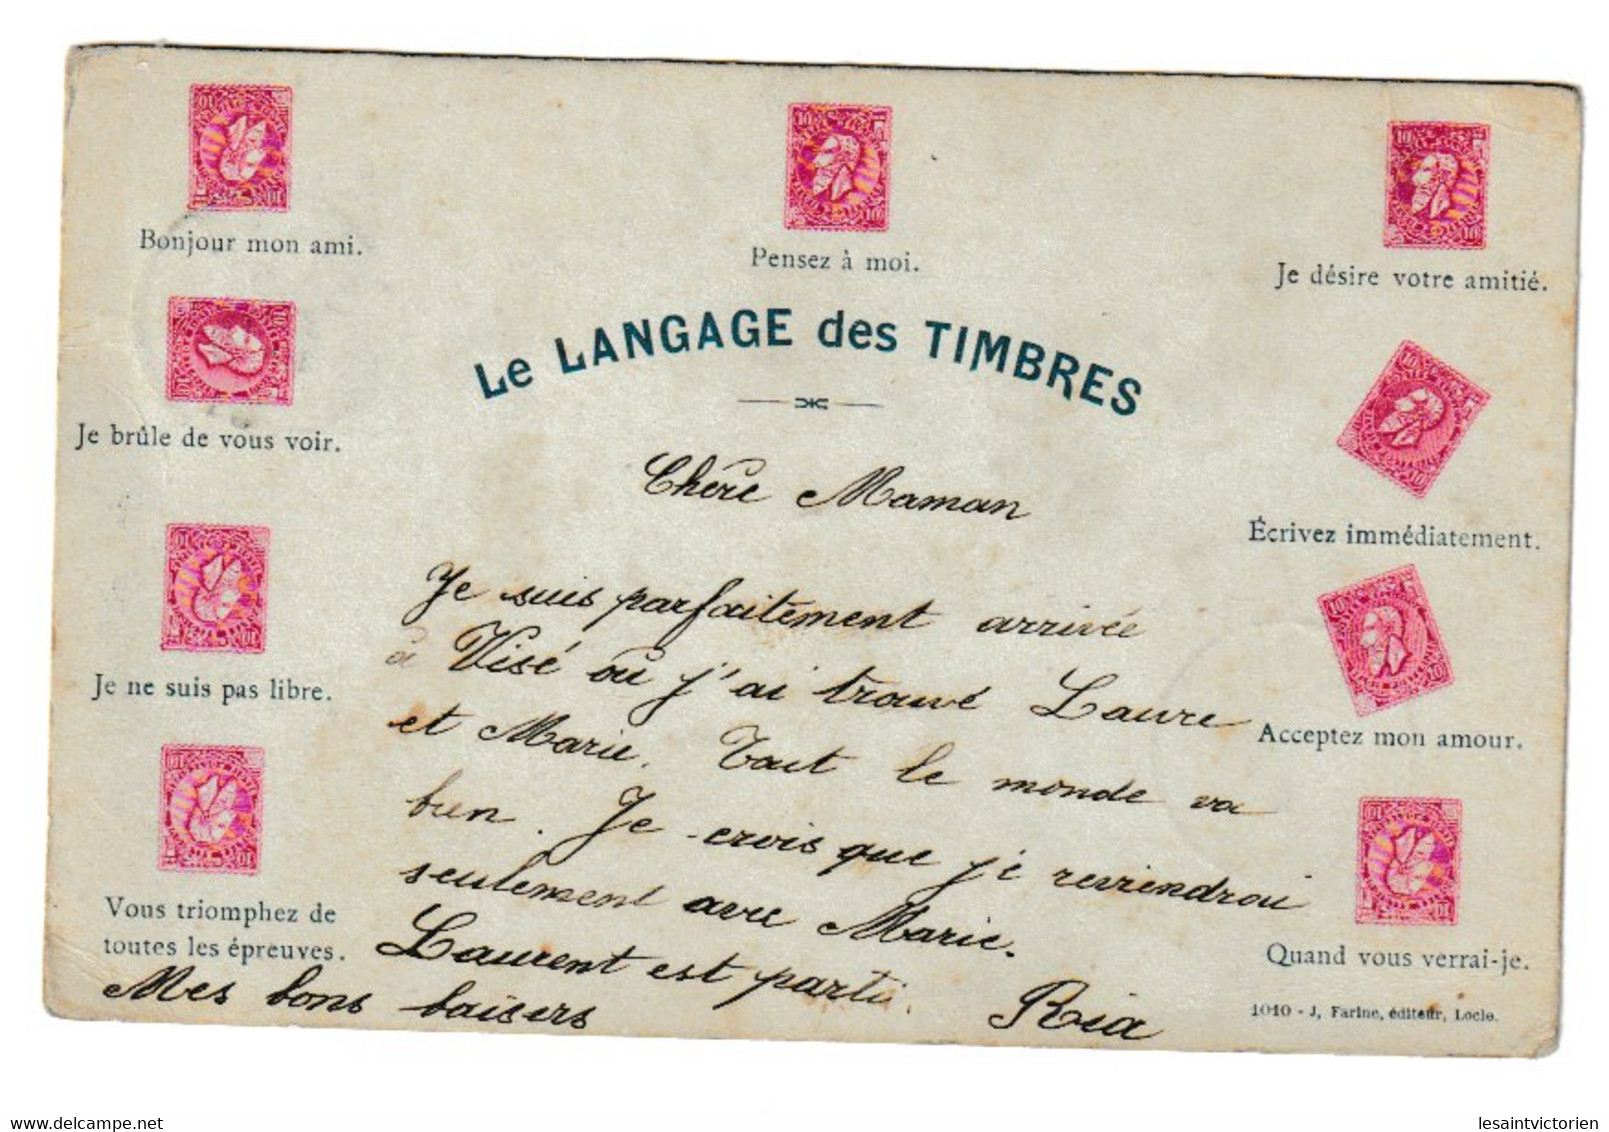 LES TIMBRES BELGES LANGAGE DES TIMBRES BELGIQUE - Postal Services